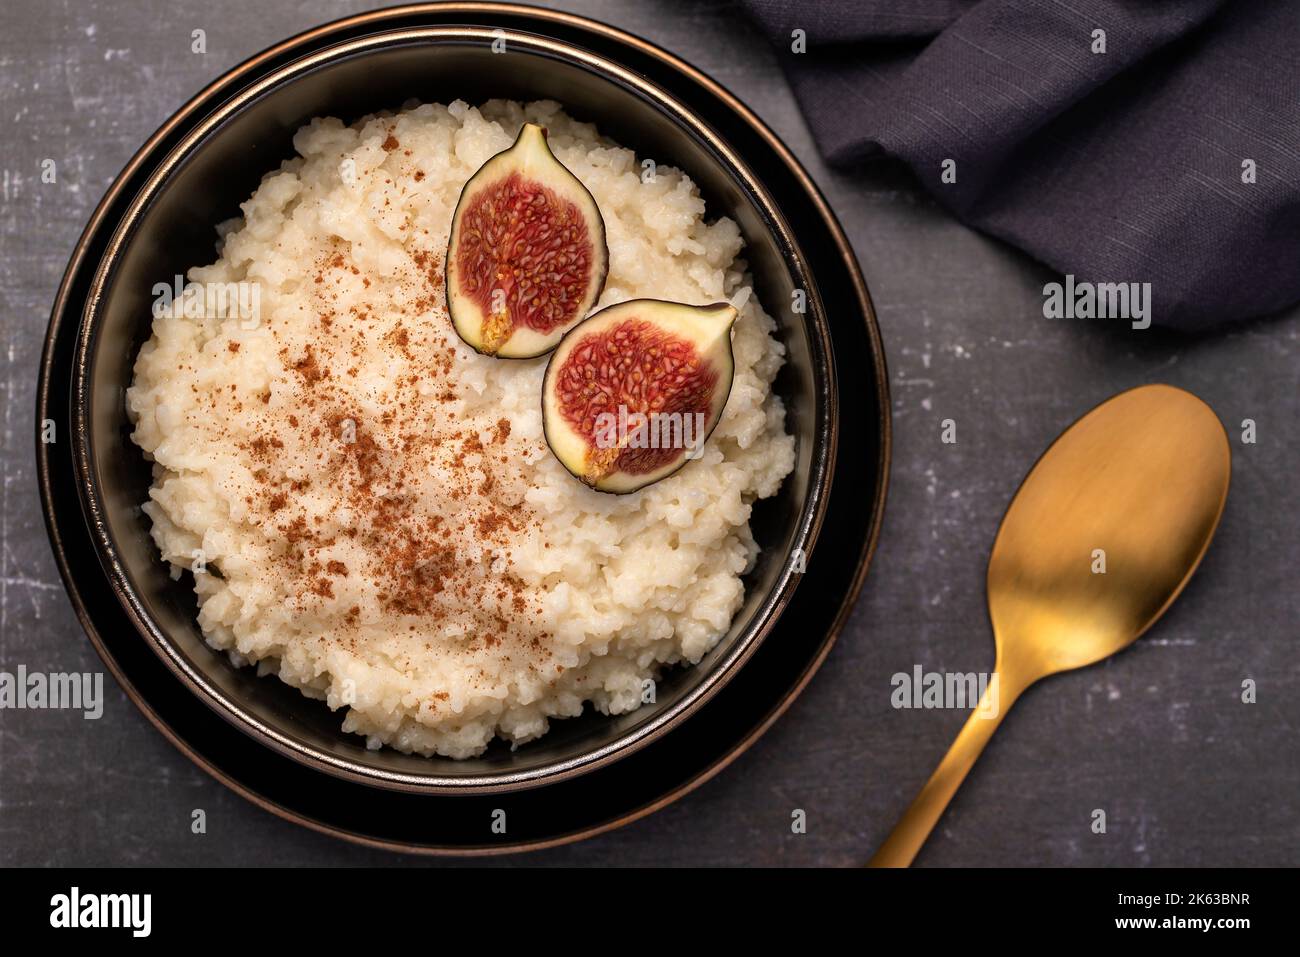 Fotografia macro-alimentare di porridge di riso, budino, cereali, fichi, cannella Foto Stock